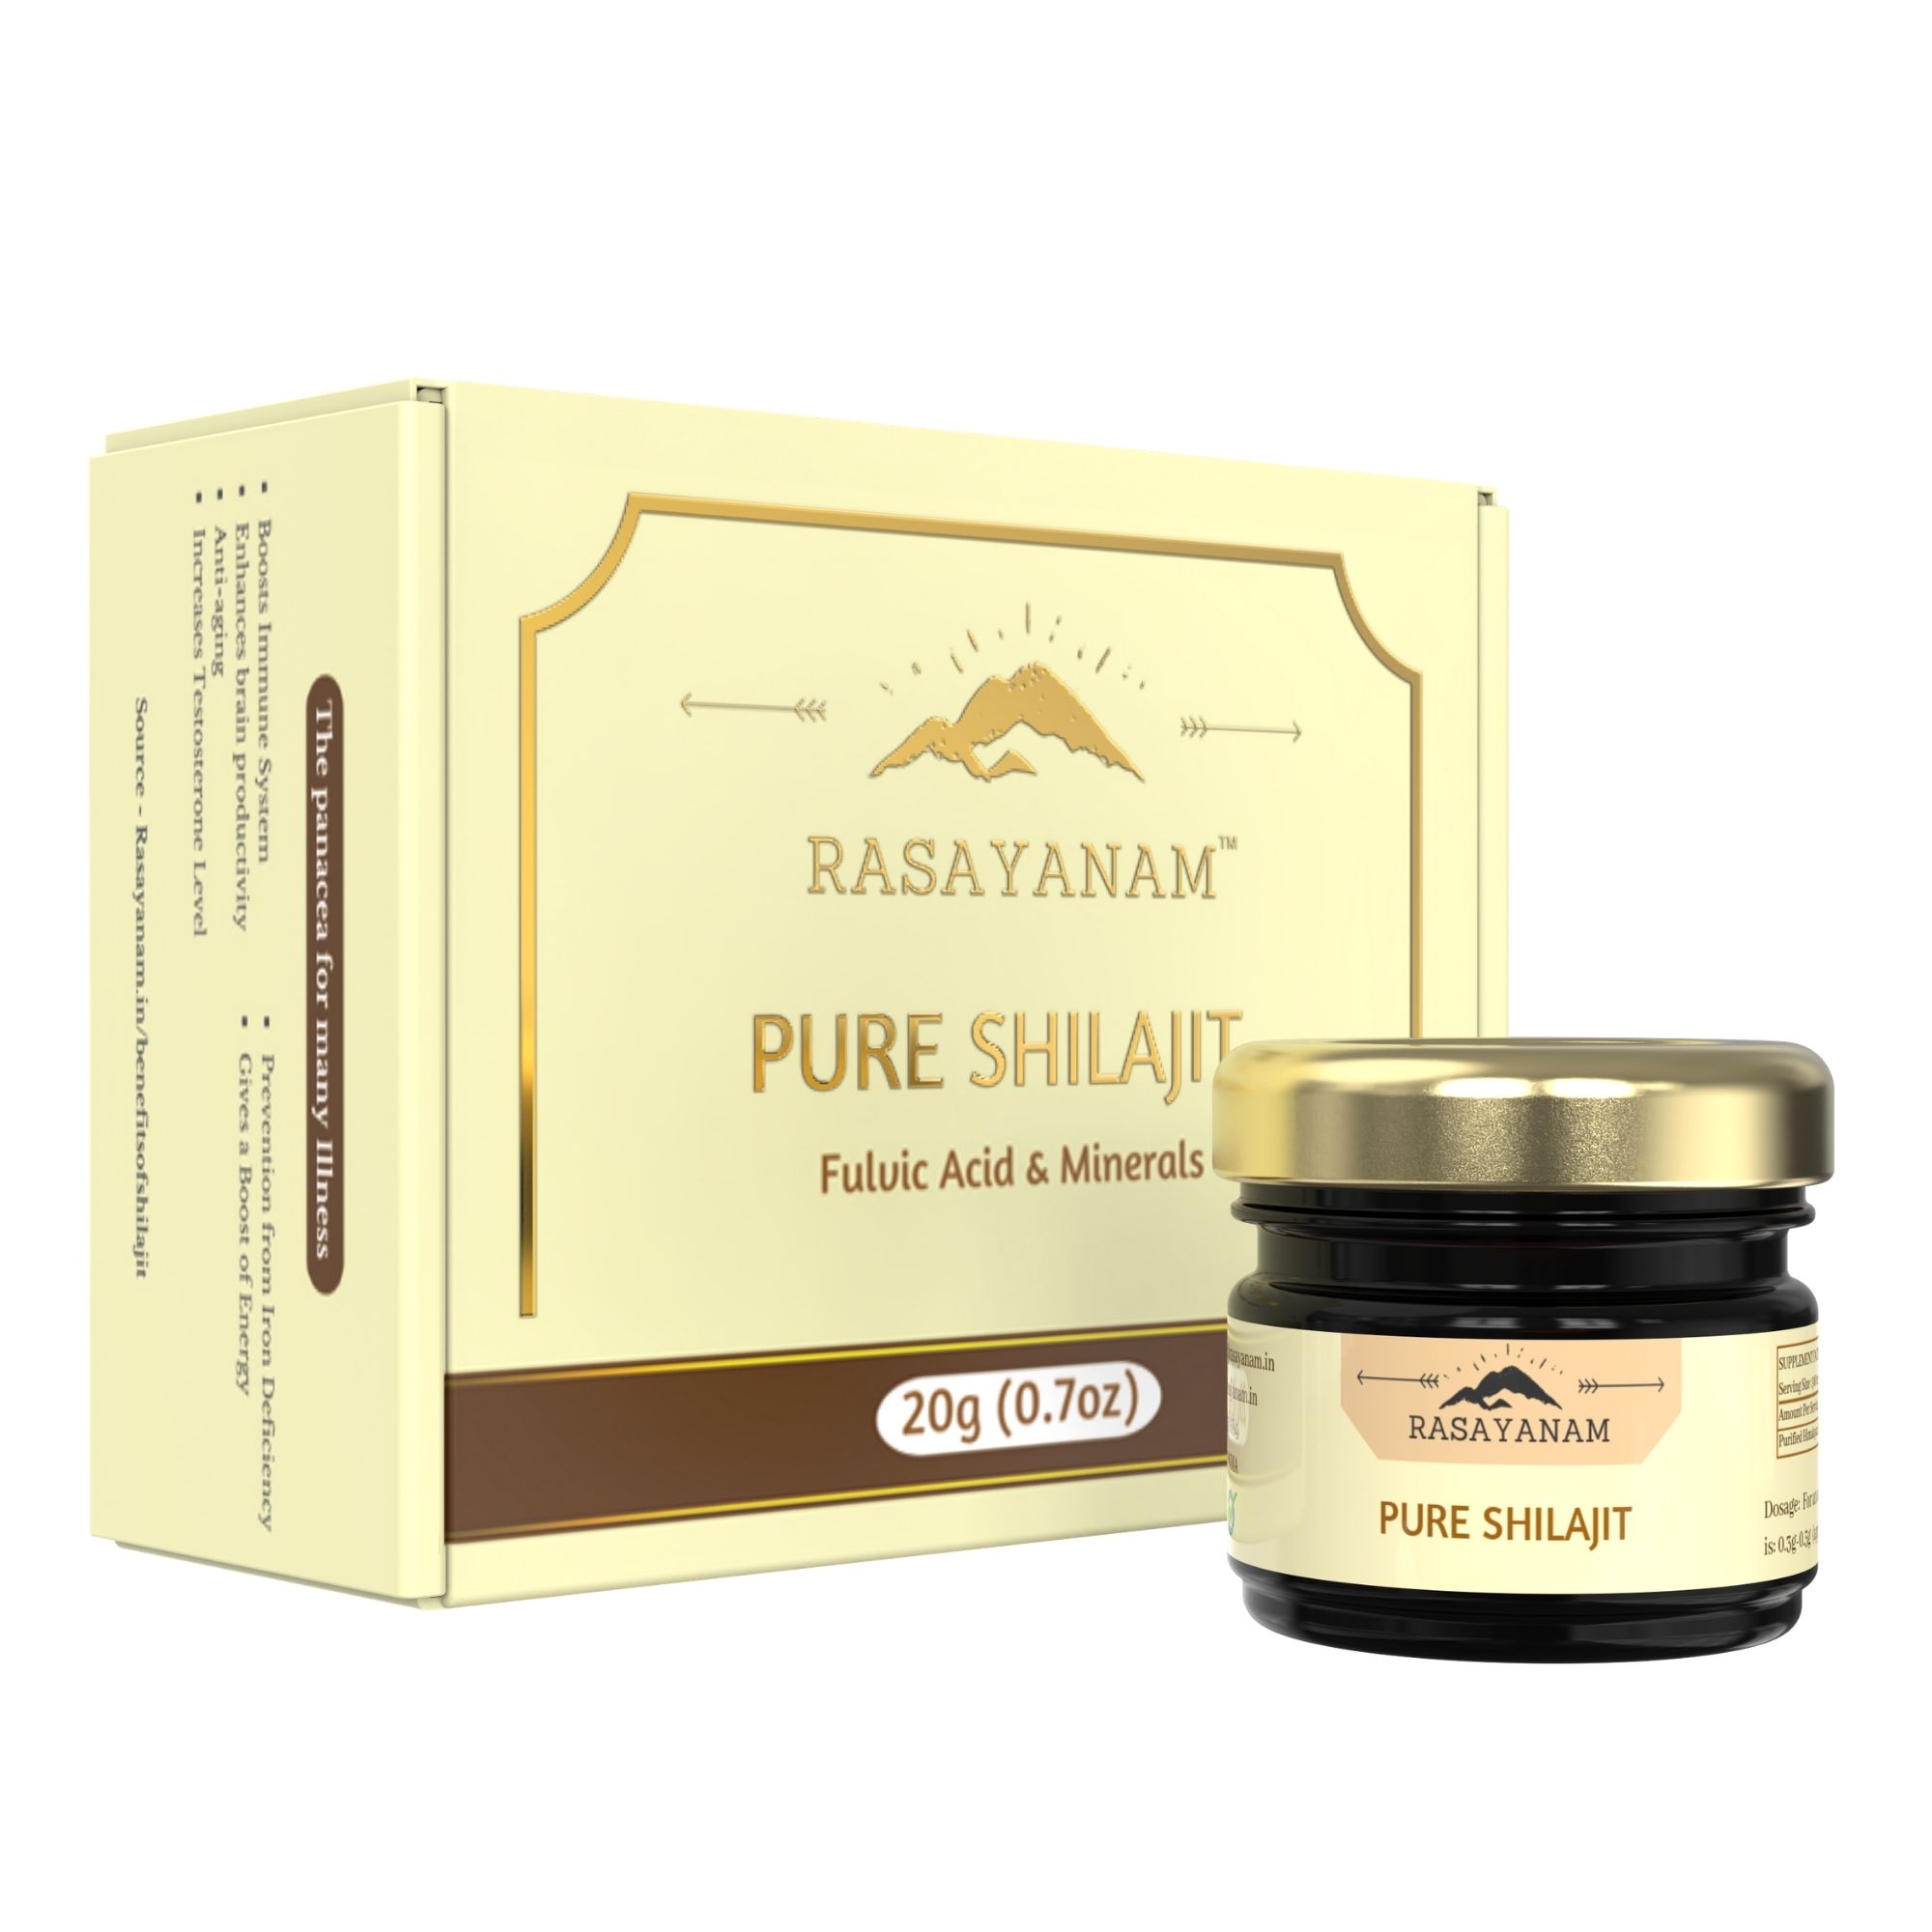 Buy Rasayanam Pure Himalayan Shilajit / Shilajeet Resin at Best Price Online